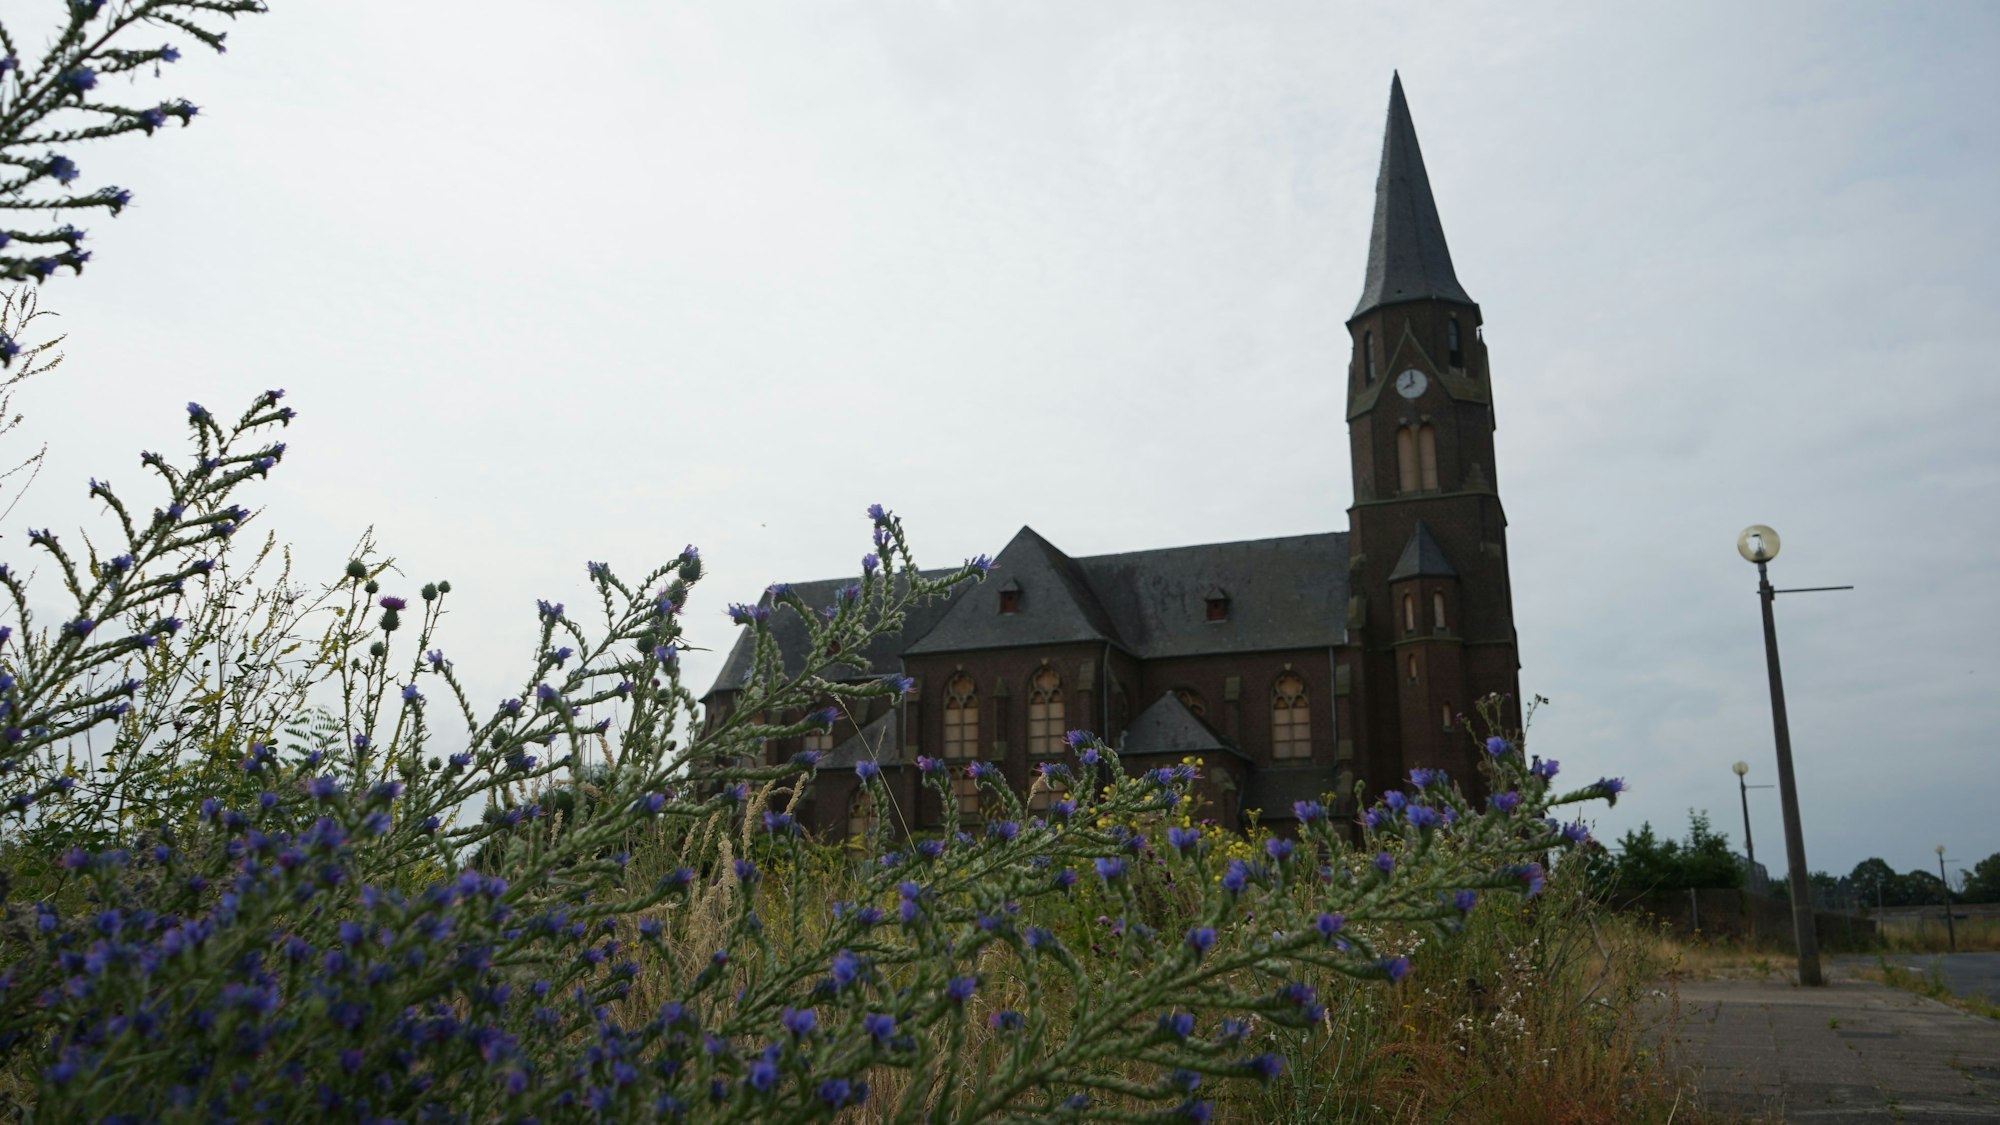 Das Bild zeigt die alte Kirche in Manheim, die Fenster sind verrammelt. Im Vordergrund wachsen Wildblumen.